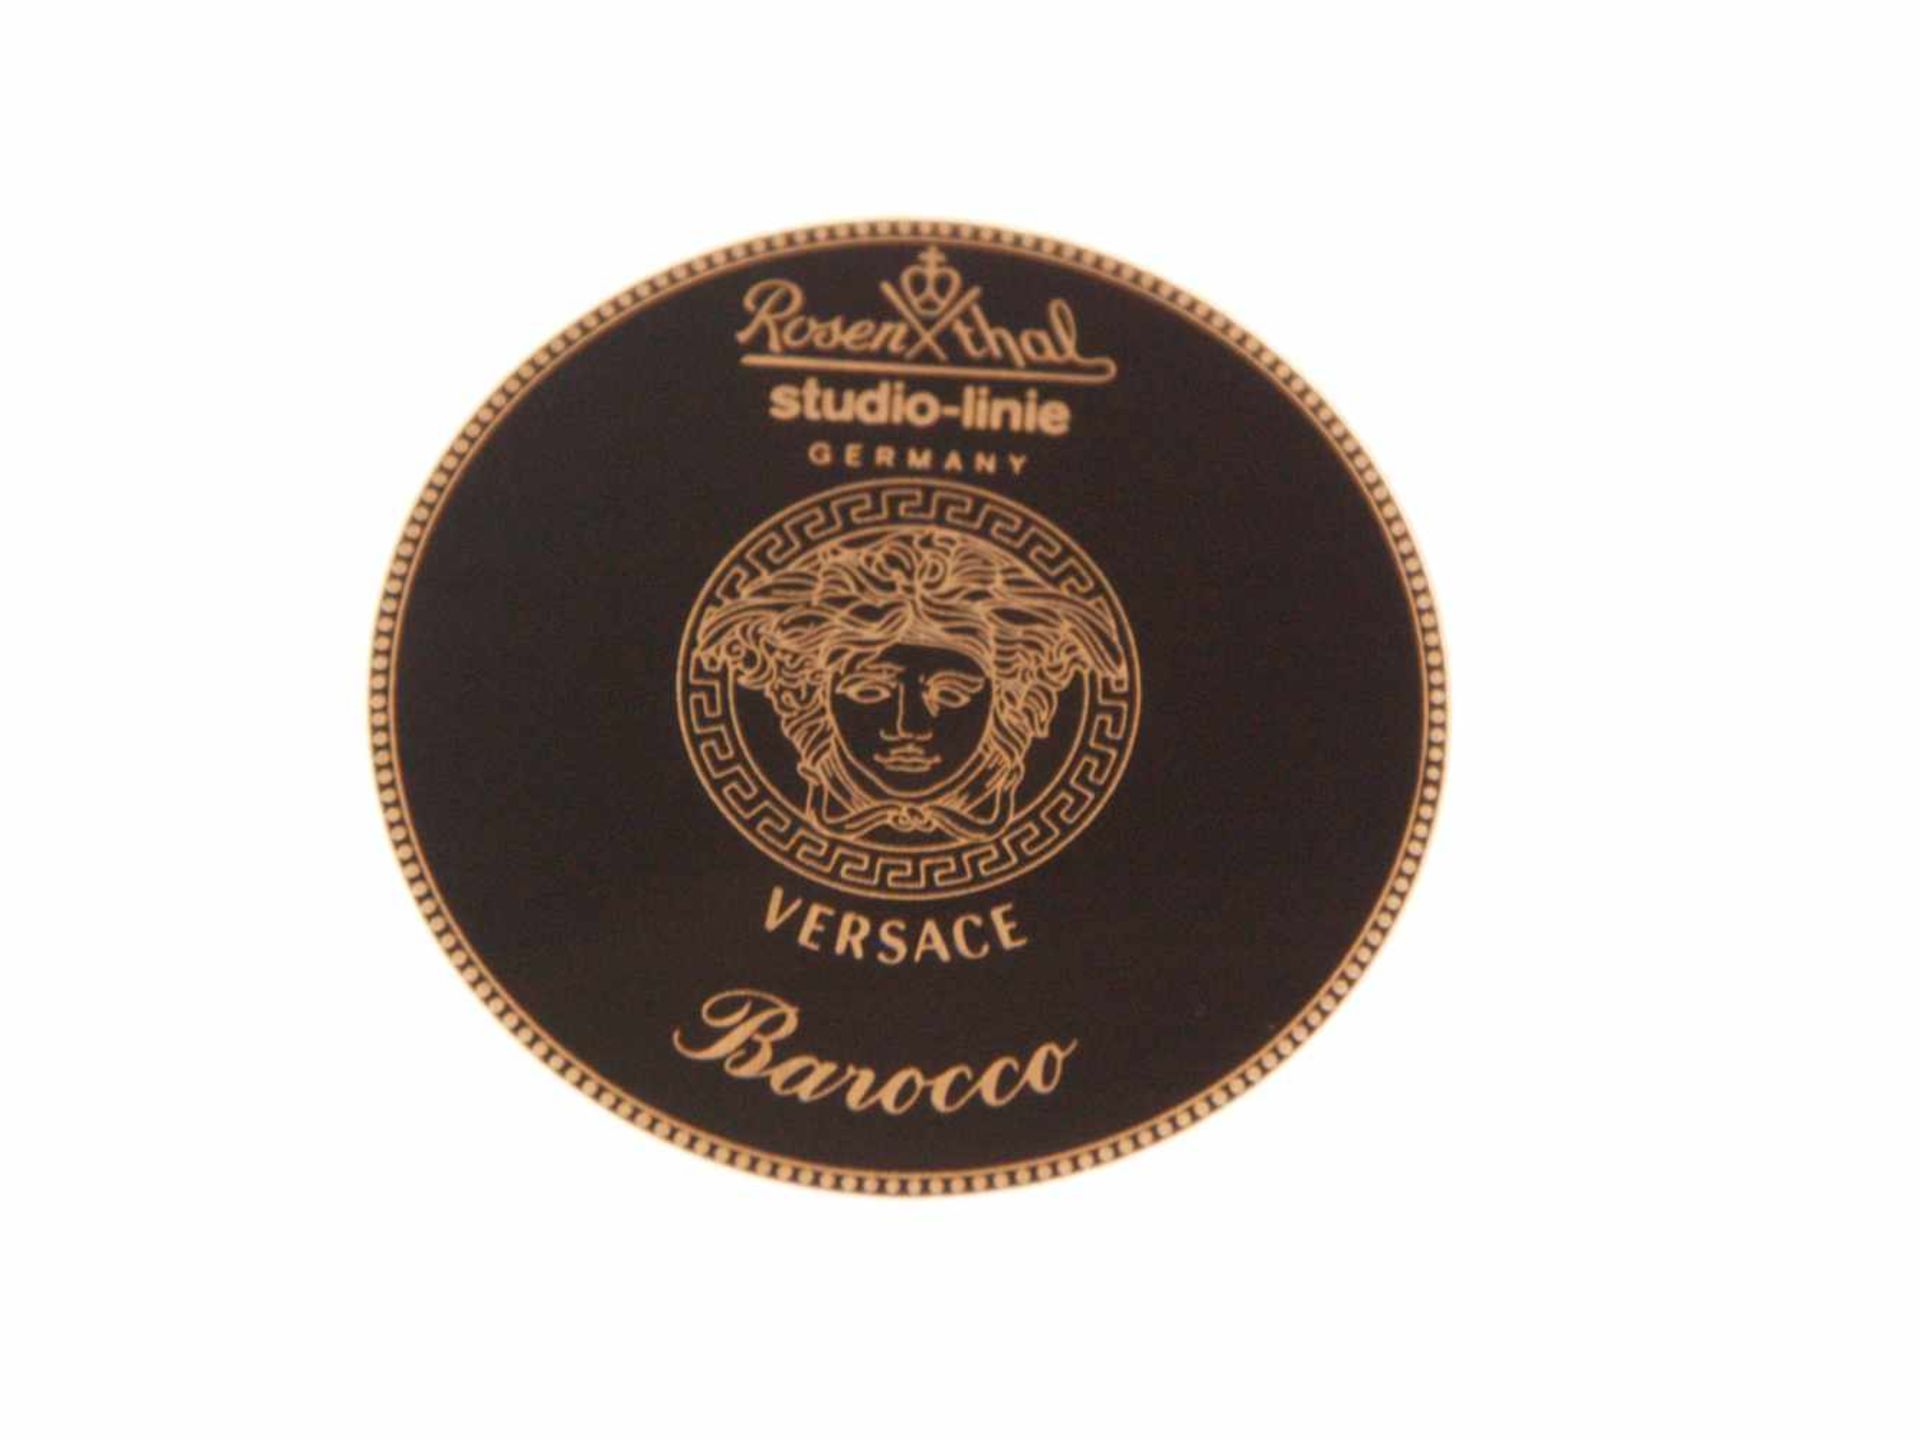 Sechs Platzteller "Versace Barocco" - Rosenthal, Entwurf Gianni Versace, Dekor Barocco, florales - Bild 6 aus 8